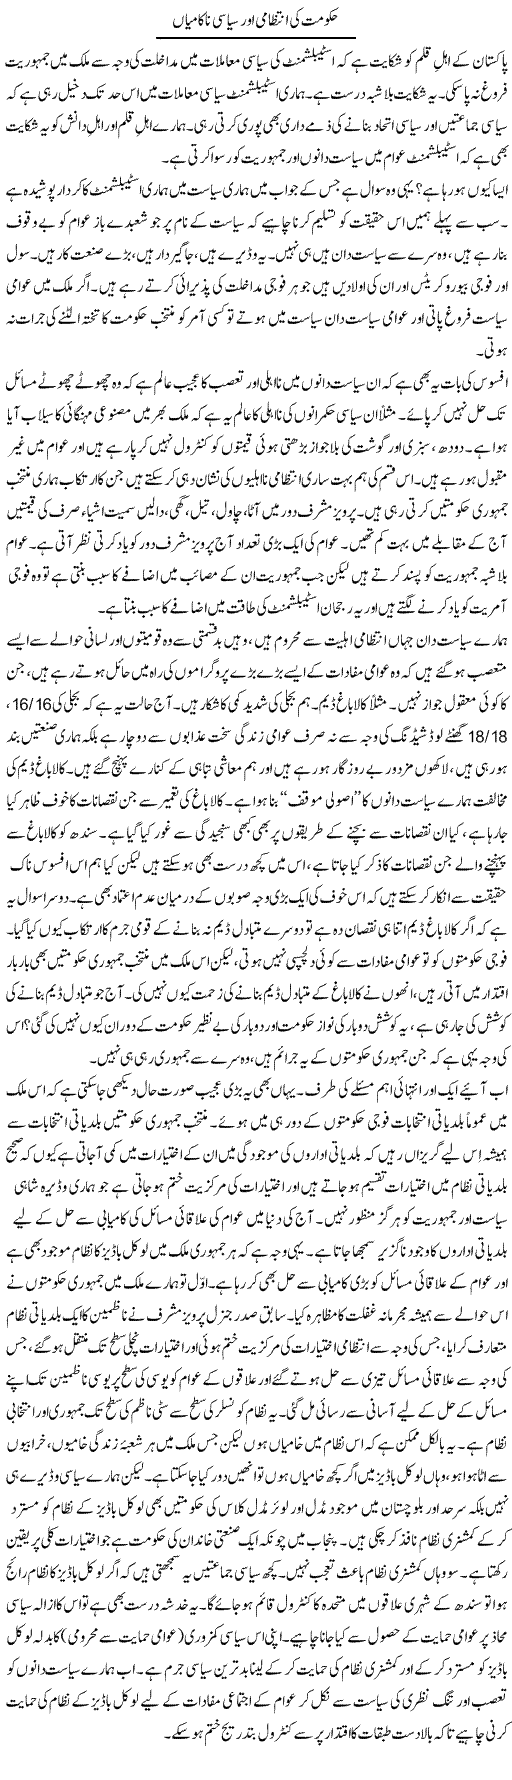 Failure of Government Express Column Zaheer Akhtar 9 December 2011